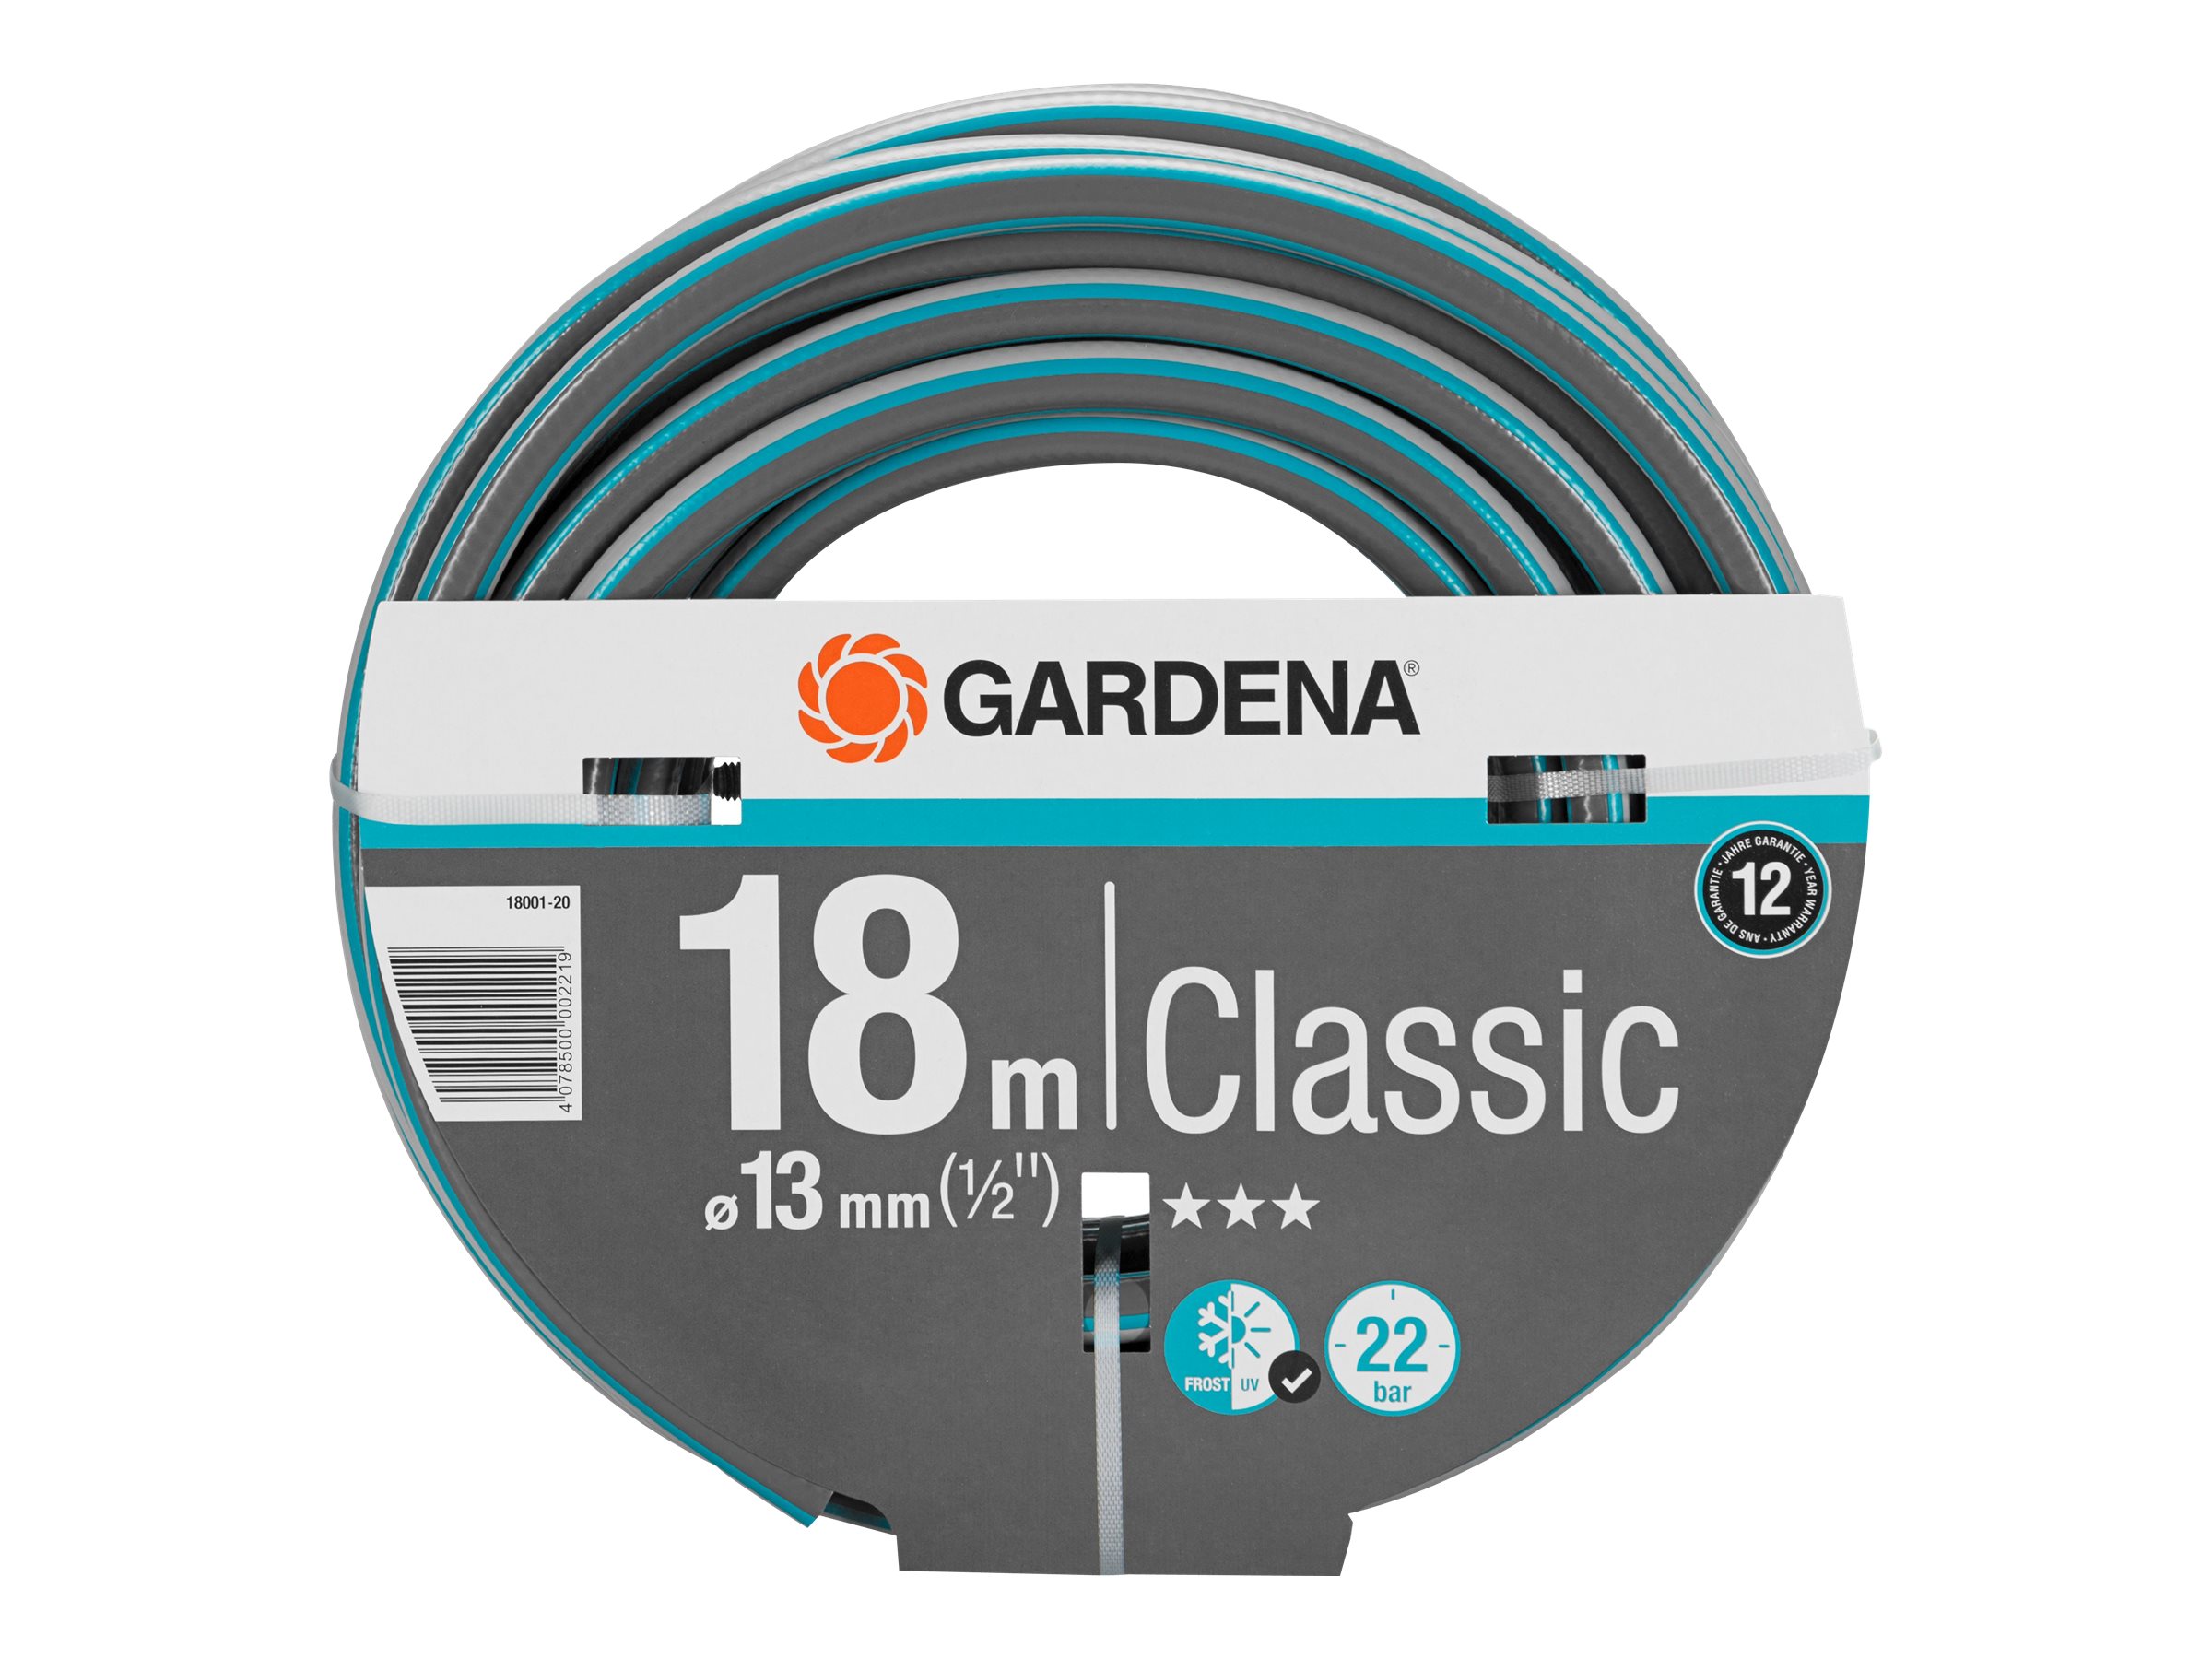 Gardena Classic - Schlauch - 18 m